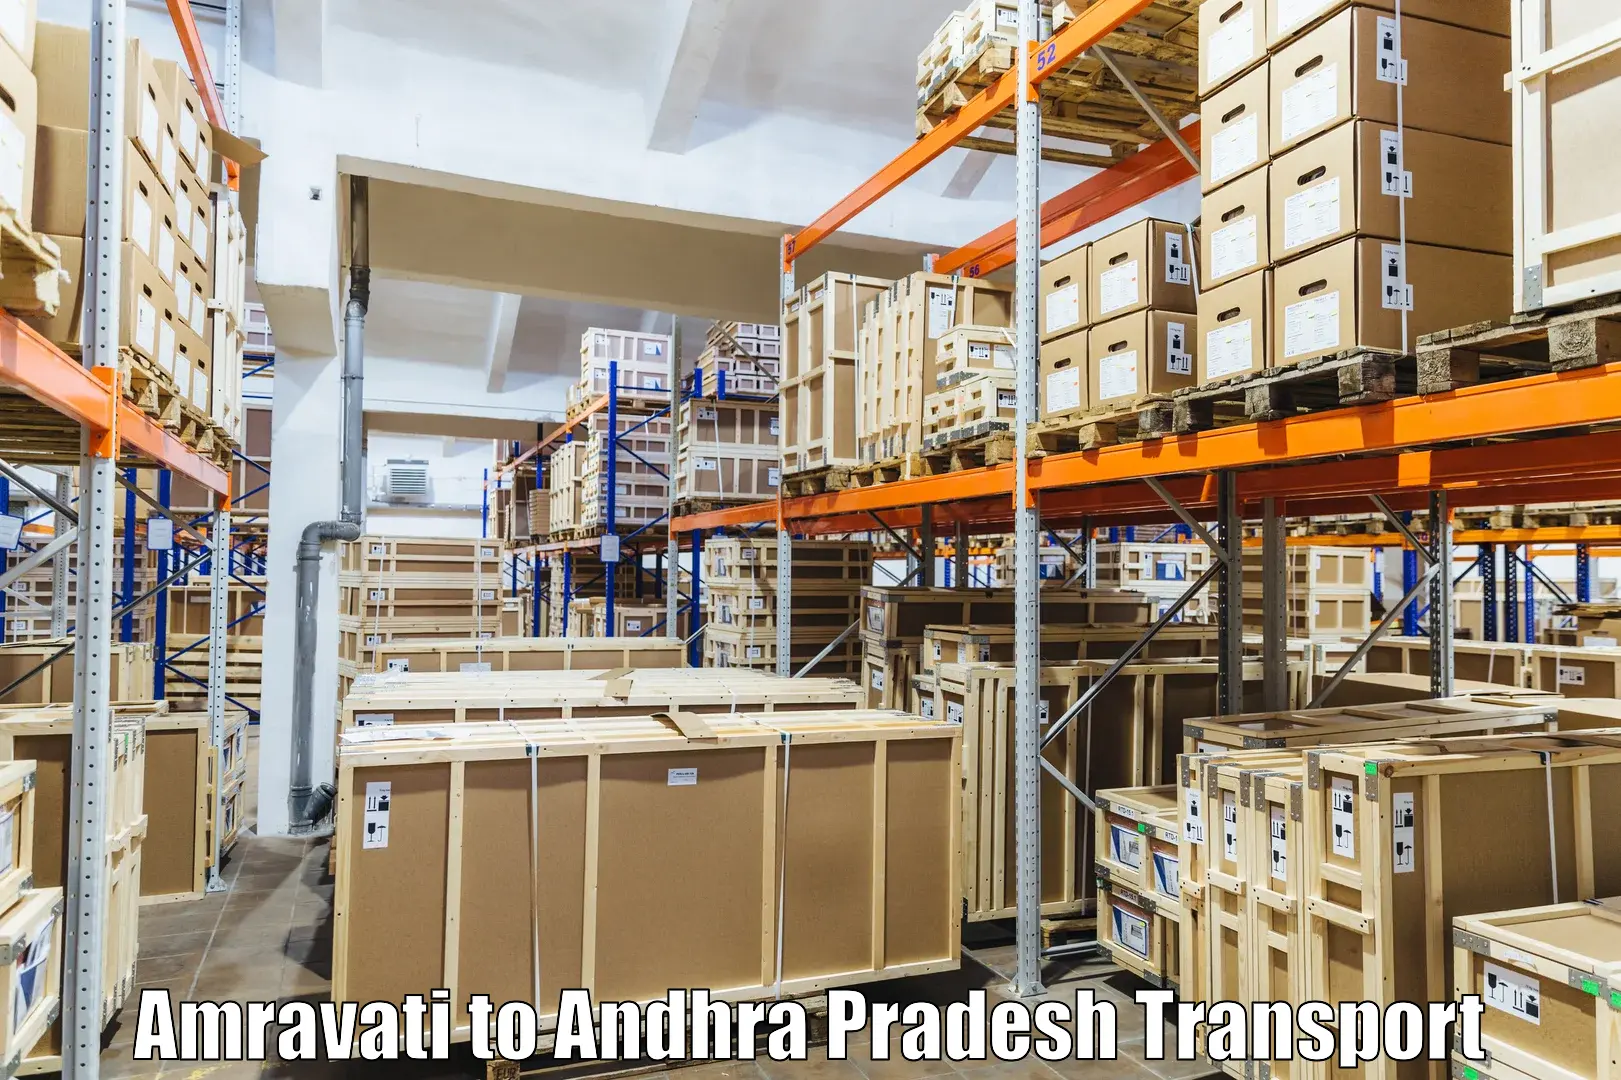 Nearby transport service Amravati to Narpala